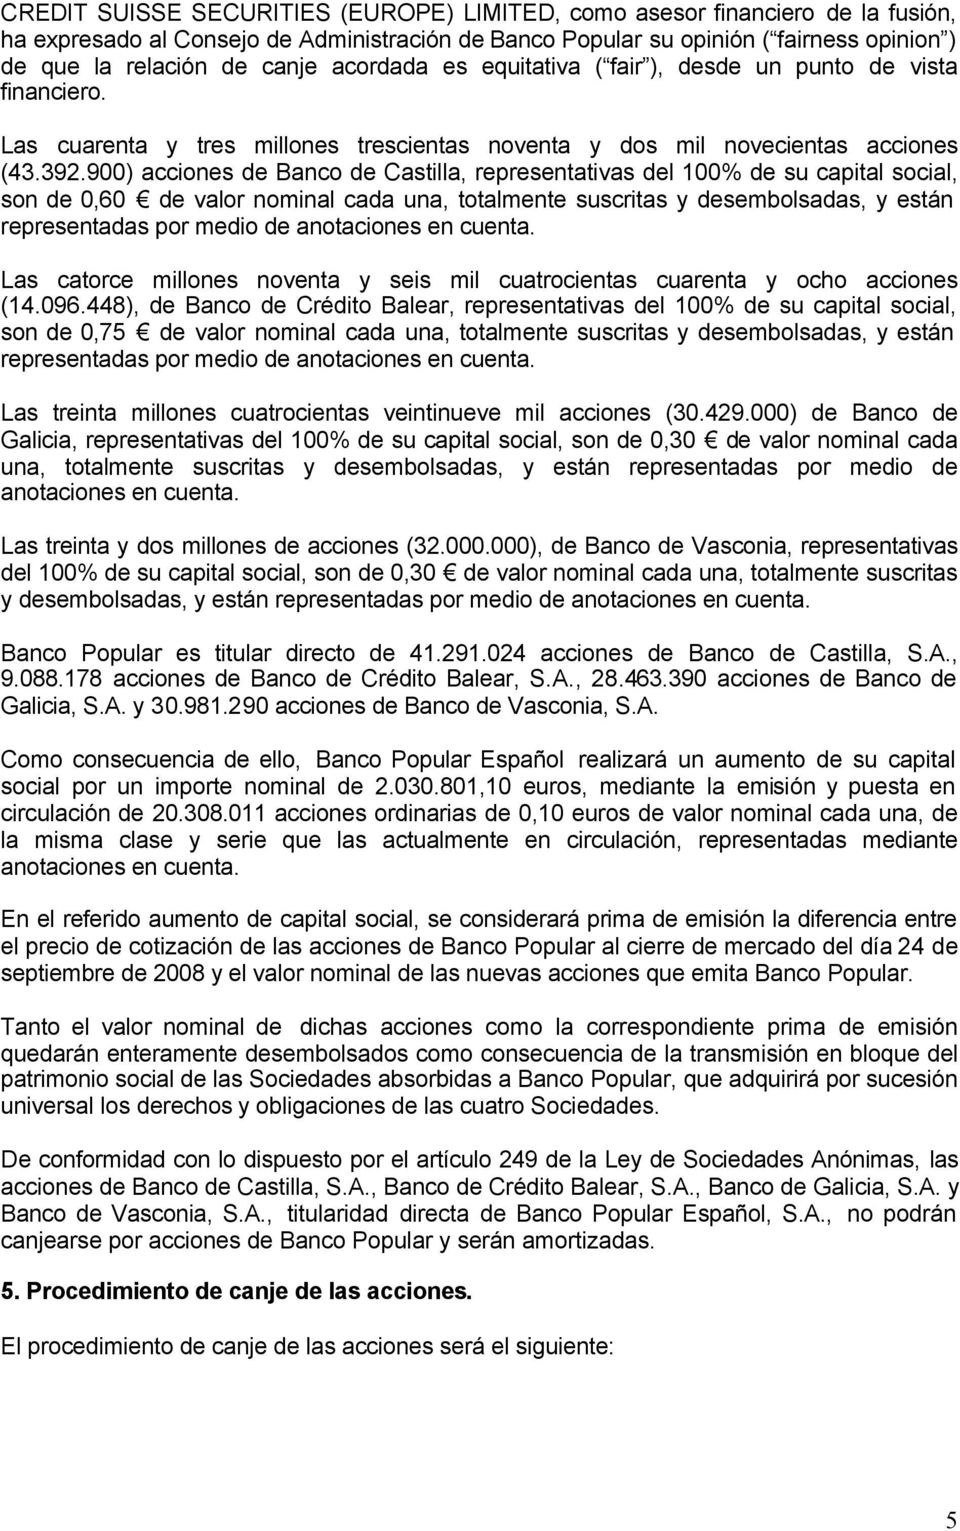 900) acciones de Banco de Castilla, representativas del 100% de su capital social, son de 0,60 de valor nominal cada una, totalmente suscritas y desembolsadas, y están representadas por medio de